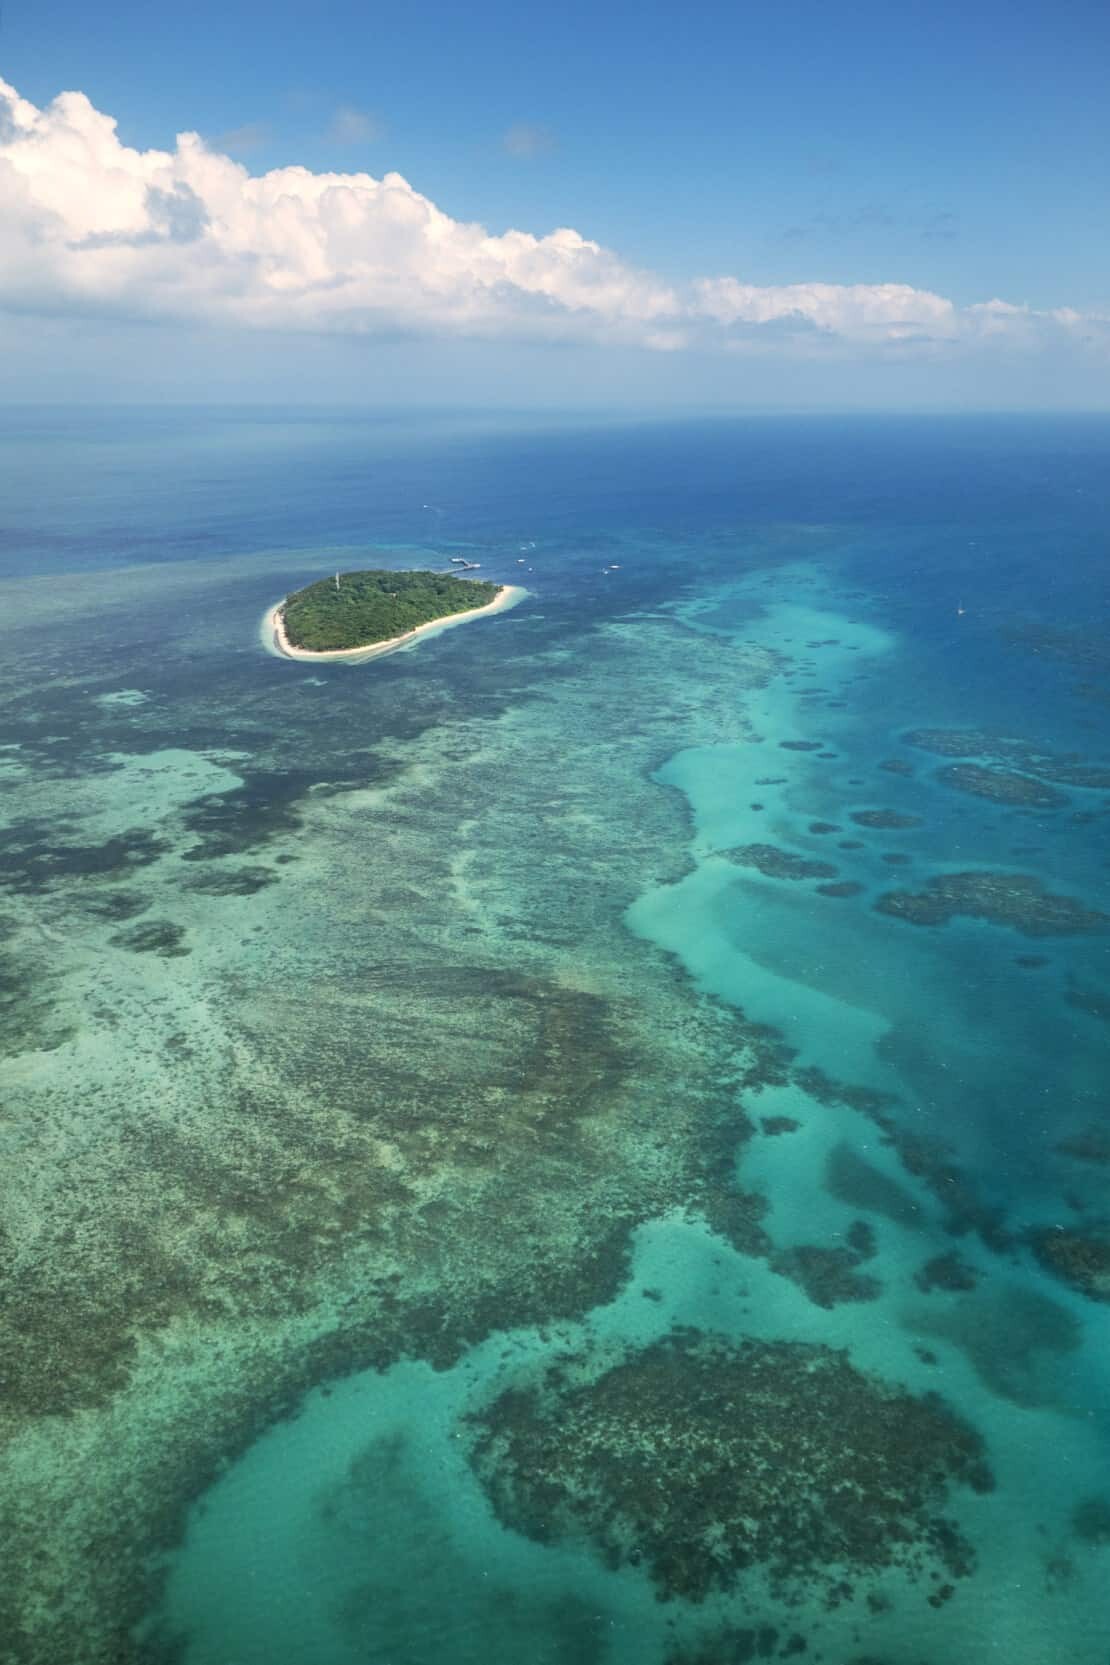 Green Island, Cairns Australia, Great Barrier Reef.